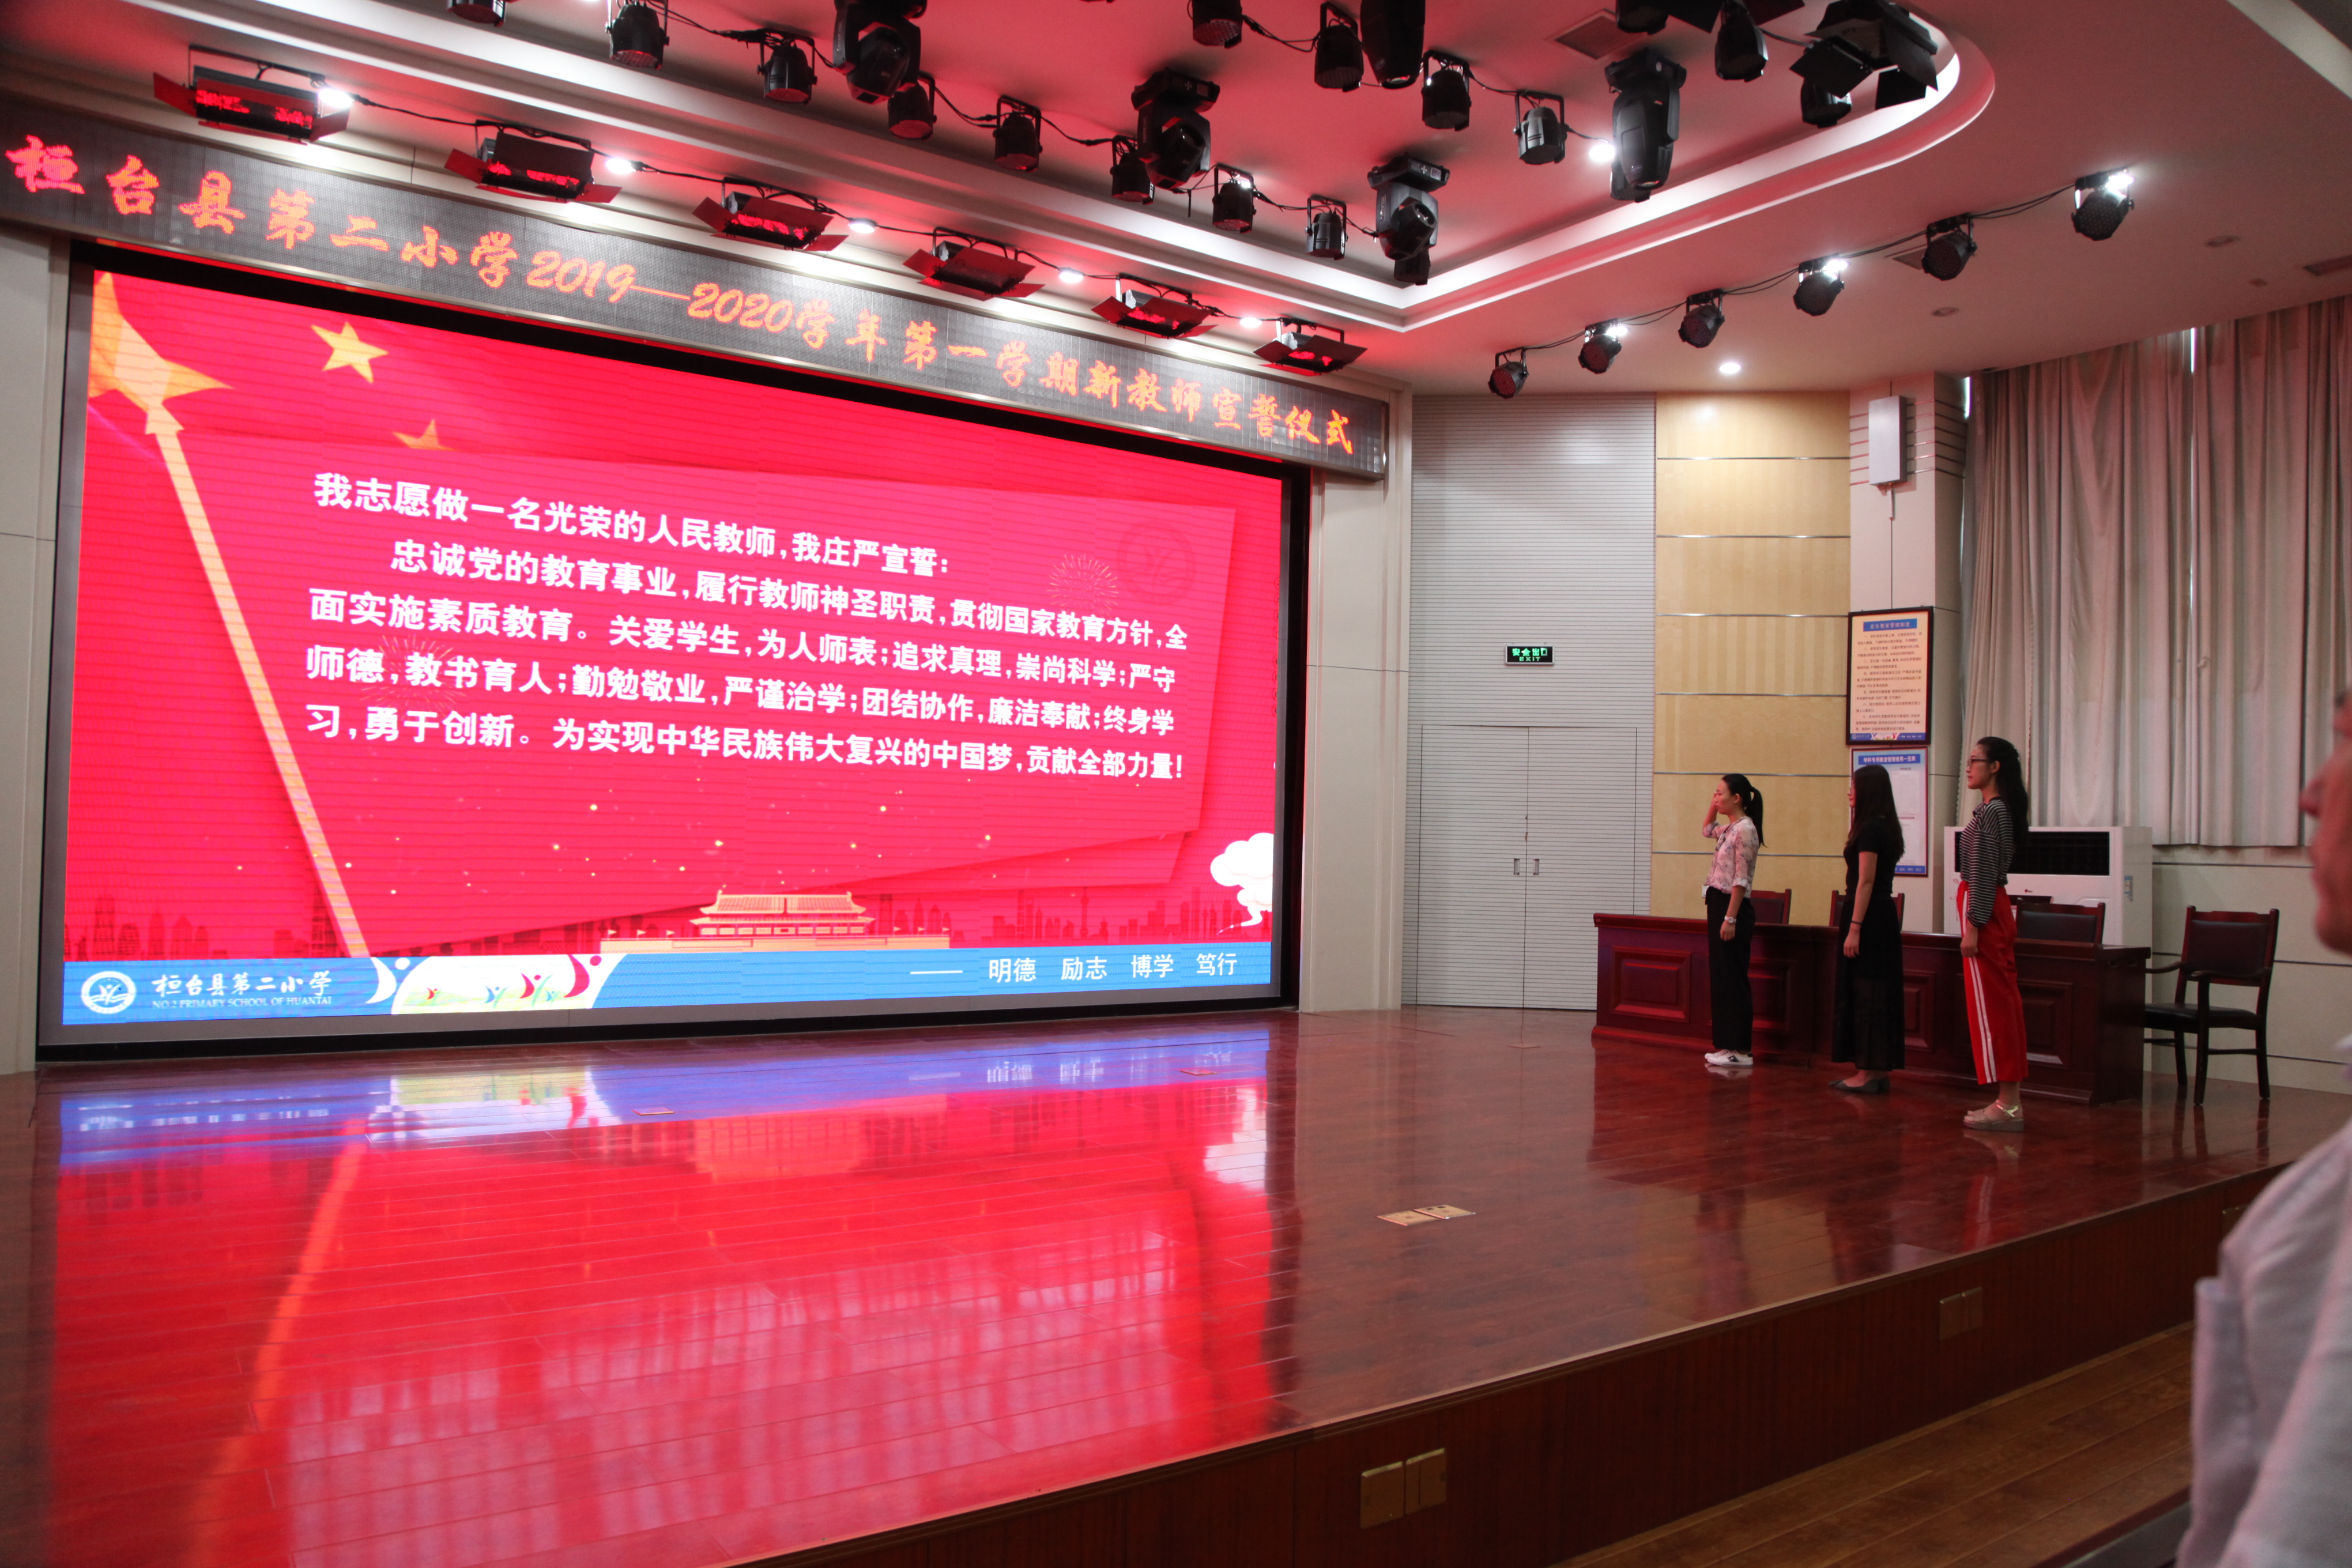 淄博市桓台县第二小学校举行新教师入职宣誓活动